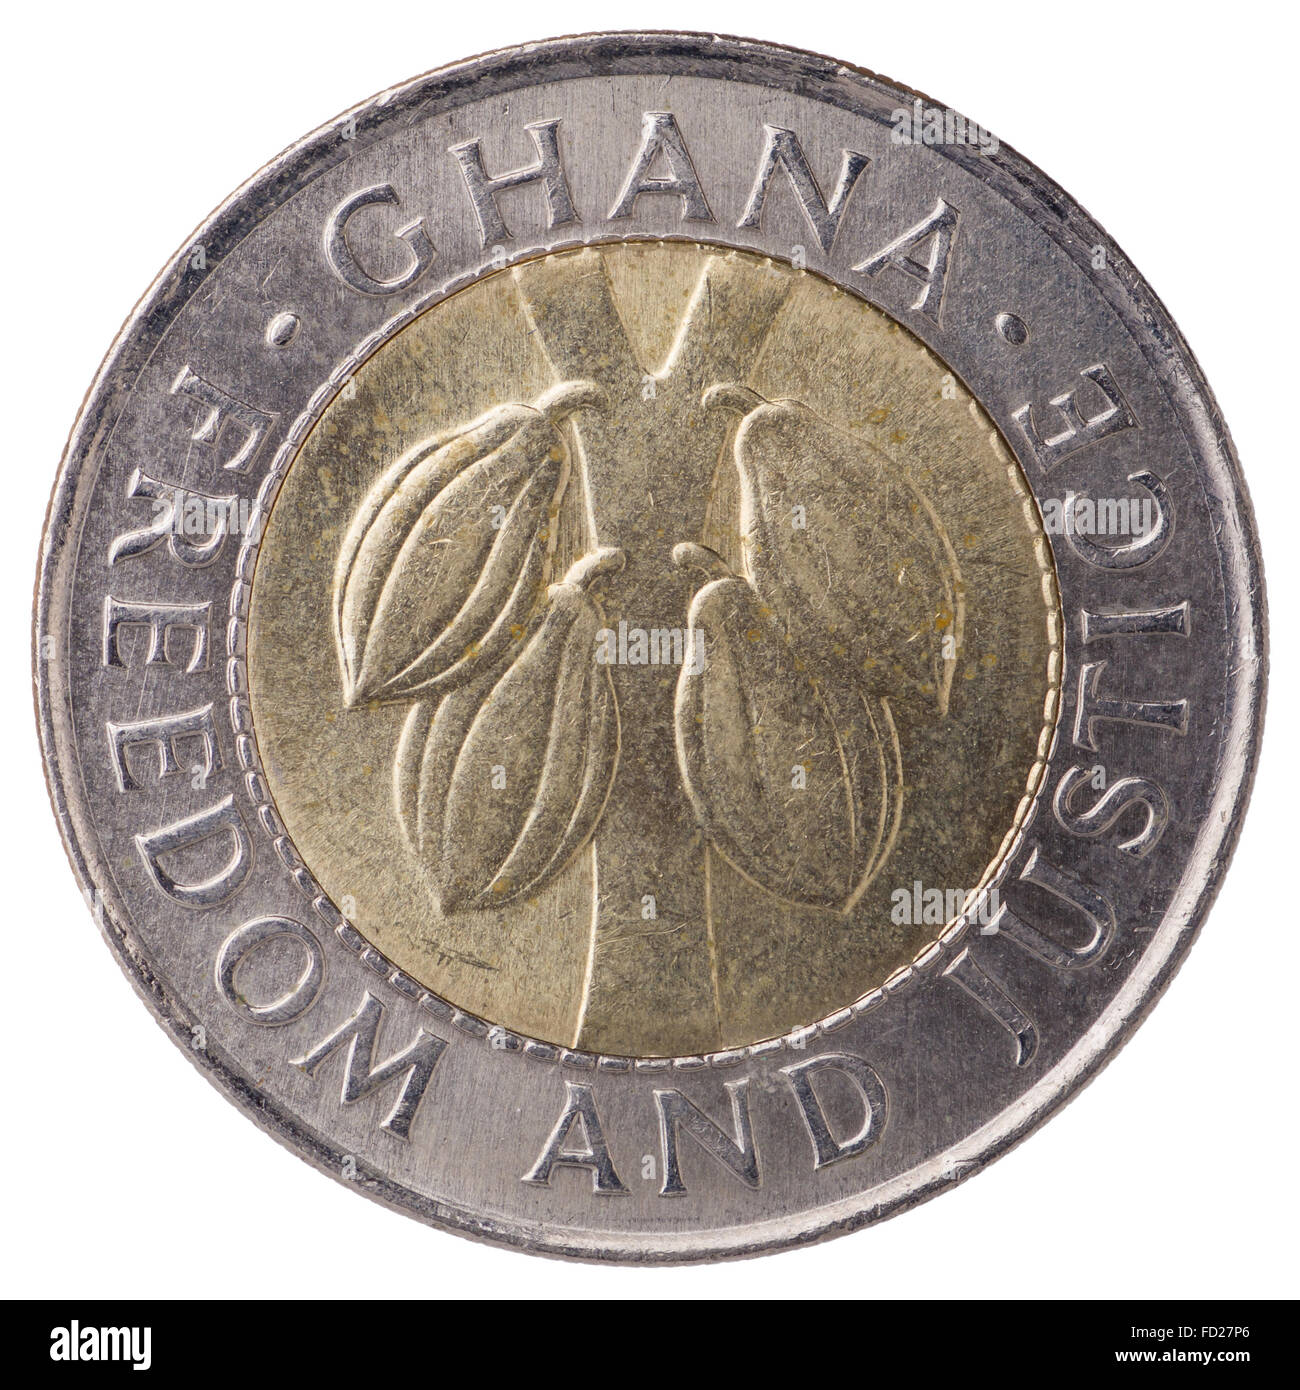 100 Ghana cedi (seconda cedi) moneta, 1999, faccia, con iscrizione: Ghana, di libertà e di giustizia Foto Stock